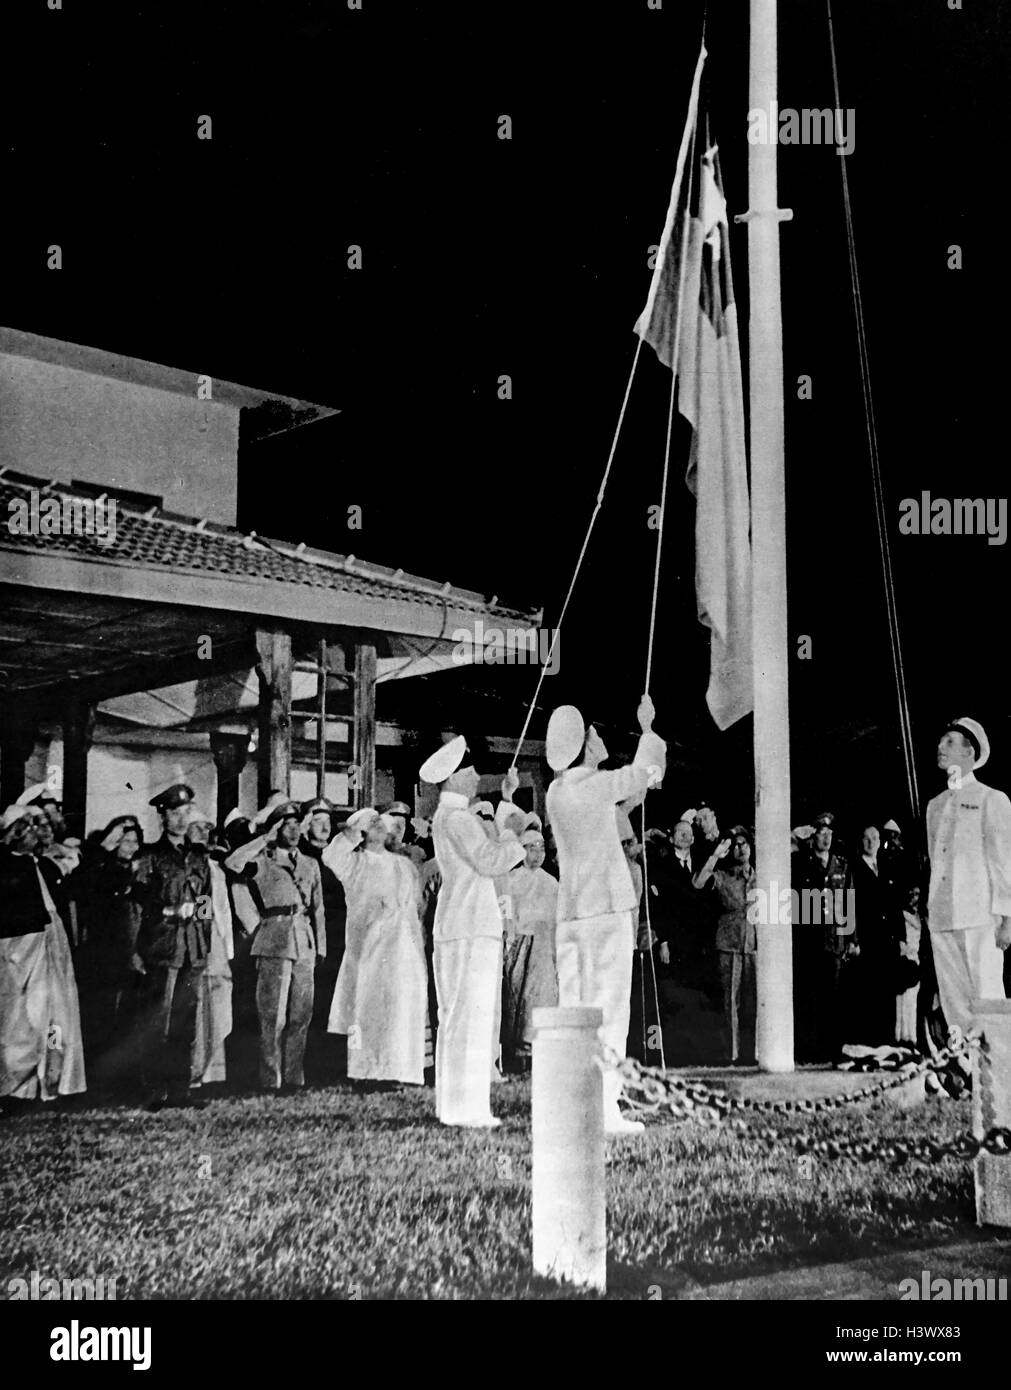 Le 4 janvier 1948, le Myanmar est devenu une république indépendante, du nom de l'Union de la Birmanie, avec Sao Shwe Thaik comme premier président et U Nu comme son premier Premier Ministre. Banque D'Images